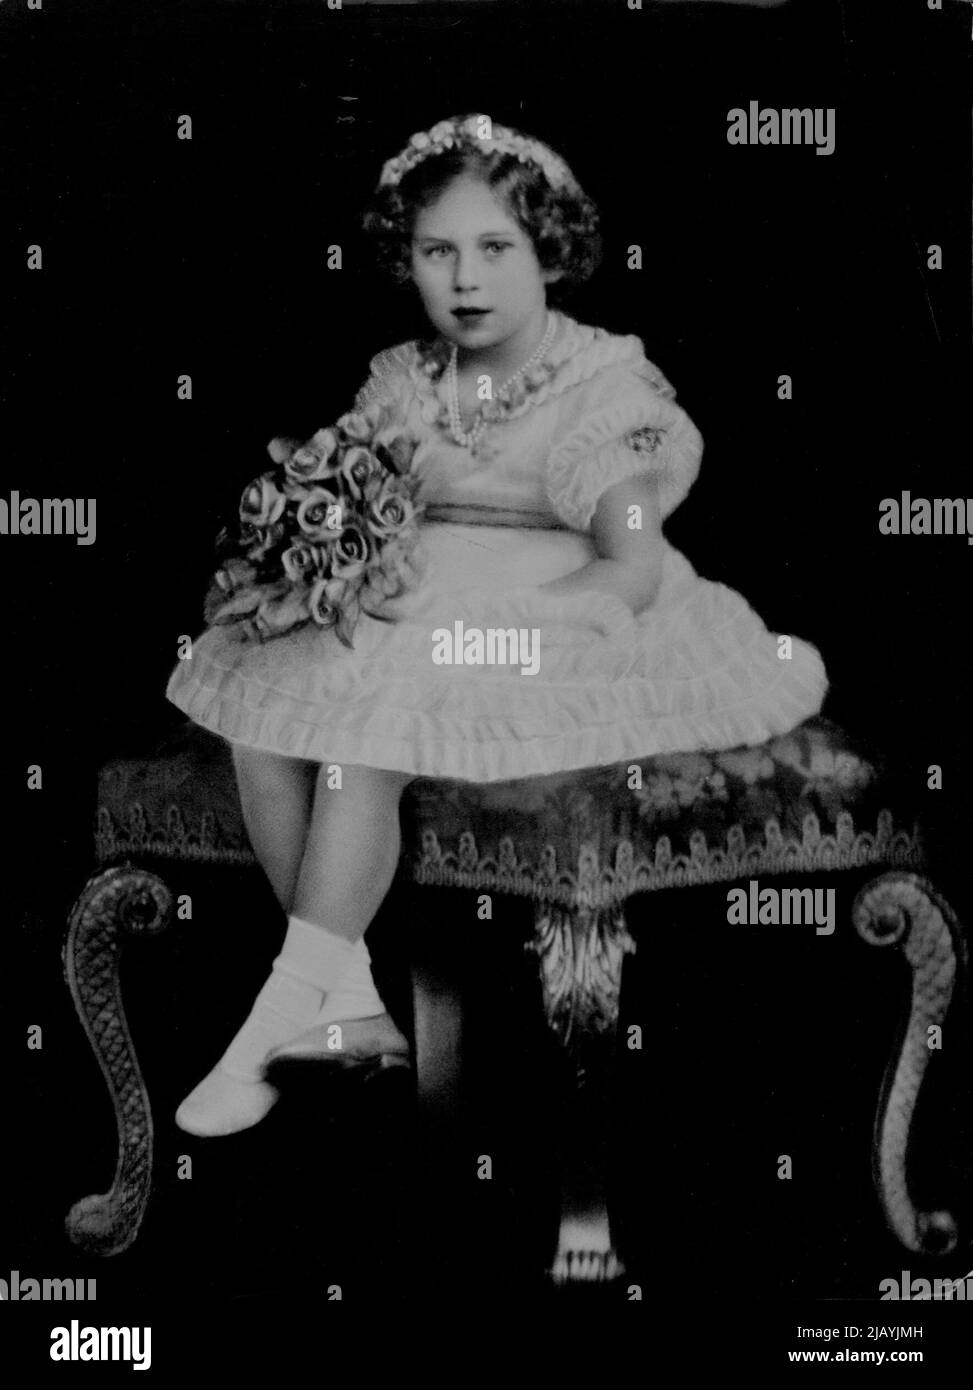 S.R.H. Prinzessin Margaret Rose von York -- Ein entzückendes Porträt der kleinen Prinzessin Margaret Rose, die die zweite in Folge des Throns ist. Sie ist die jüngere Tochter ihrer Majestäten, des Königs und der Königin. Sie wurde im August 21. geboren. 1930. 08. Februar 1937. (Foto von Hay Wrightson). Stockfoto